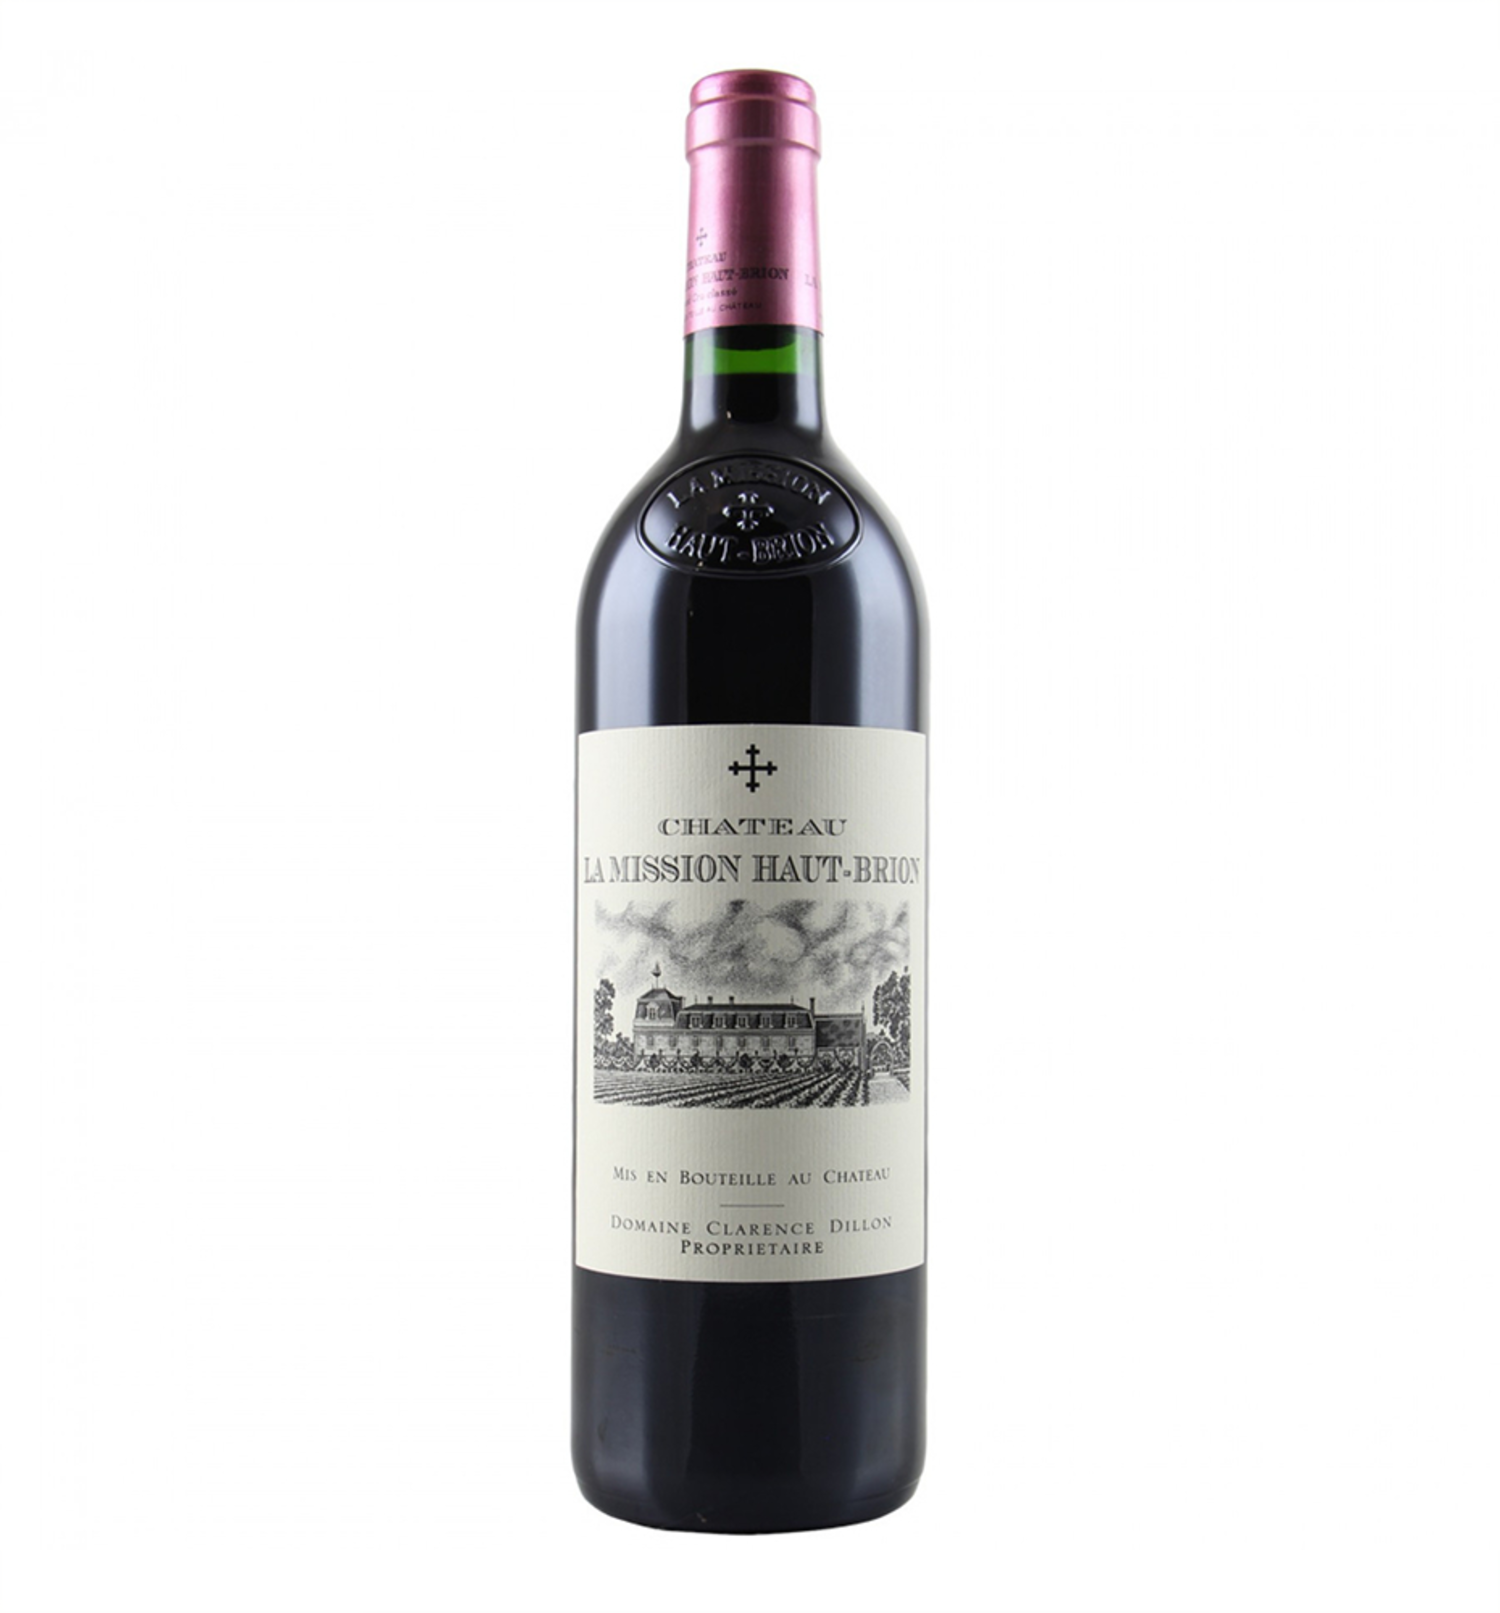 Wine&Spirits Chateau Pessac-Leognan 750ml Bordeaux Fossil Uncle Mission - 2011 Red La Haut-Brion Blends